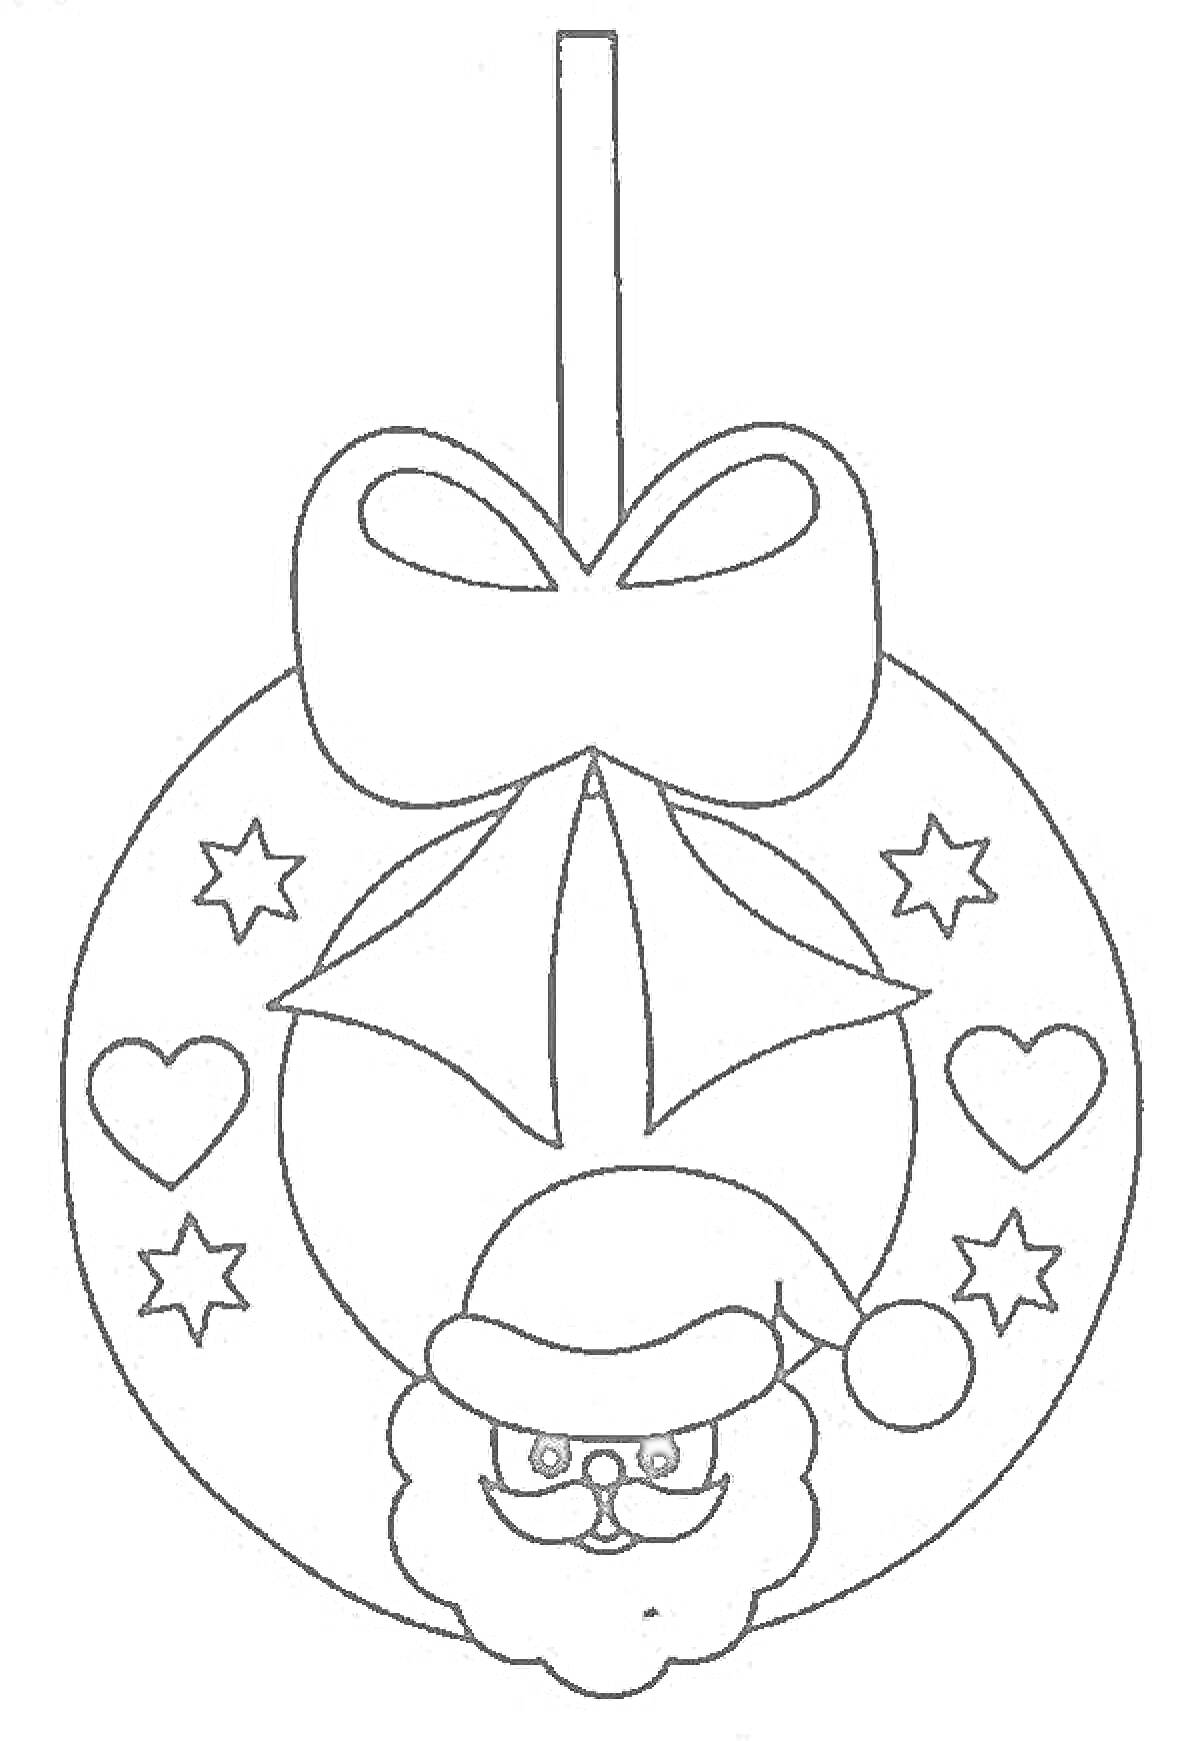 Новогодний шар с Дедом Морозом, бантом, сердечками и звездами